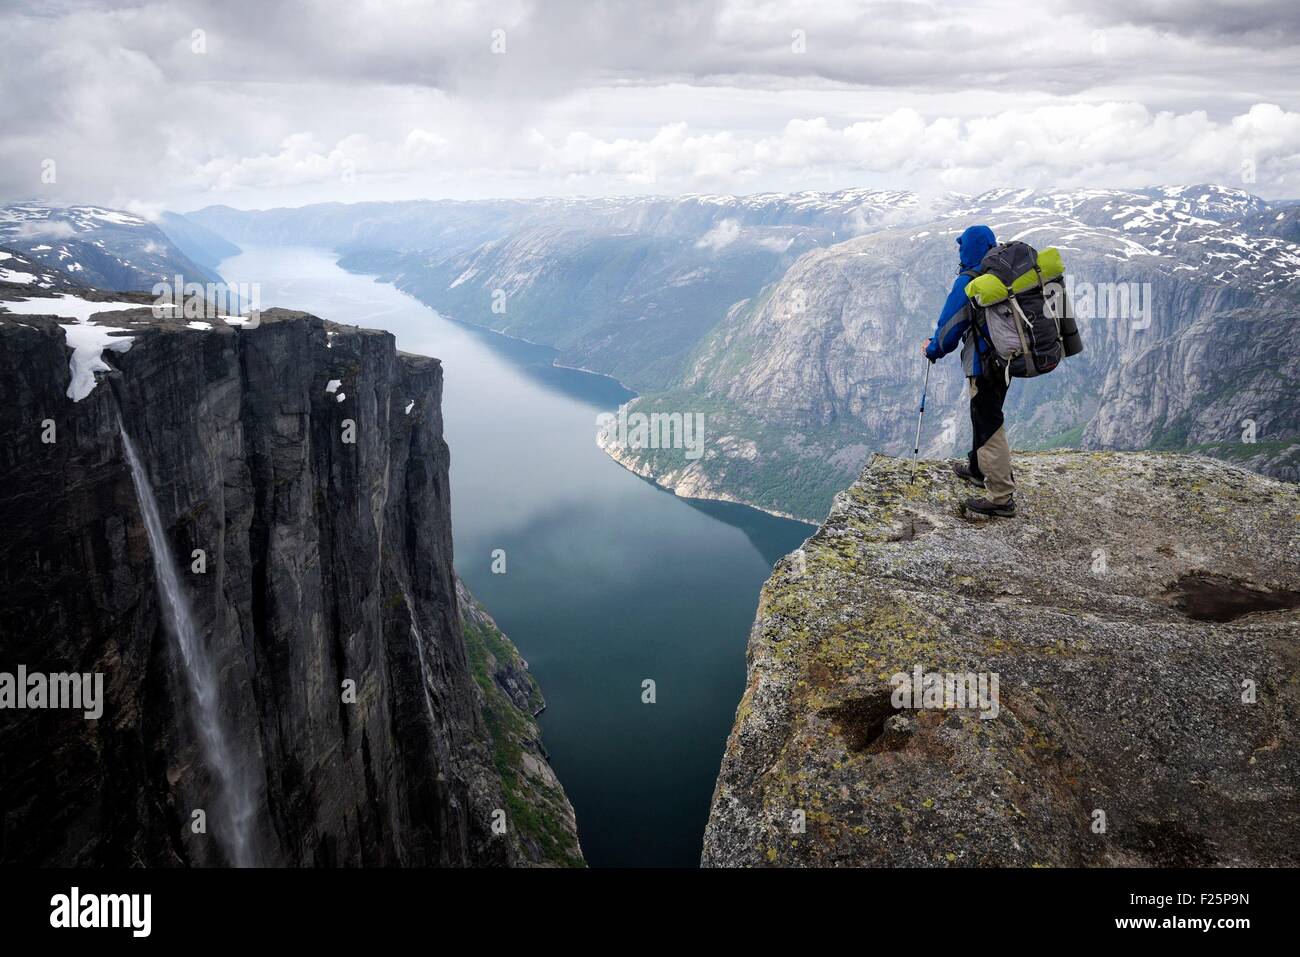 Norvegia, Rogaland, Lysefjord, Kjerag (Kiragg), escursionista guardare il fiordo 1000m sotto (MR Julien OK) Foto Stock